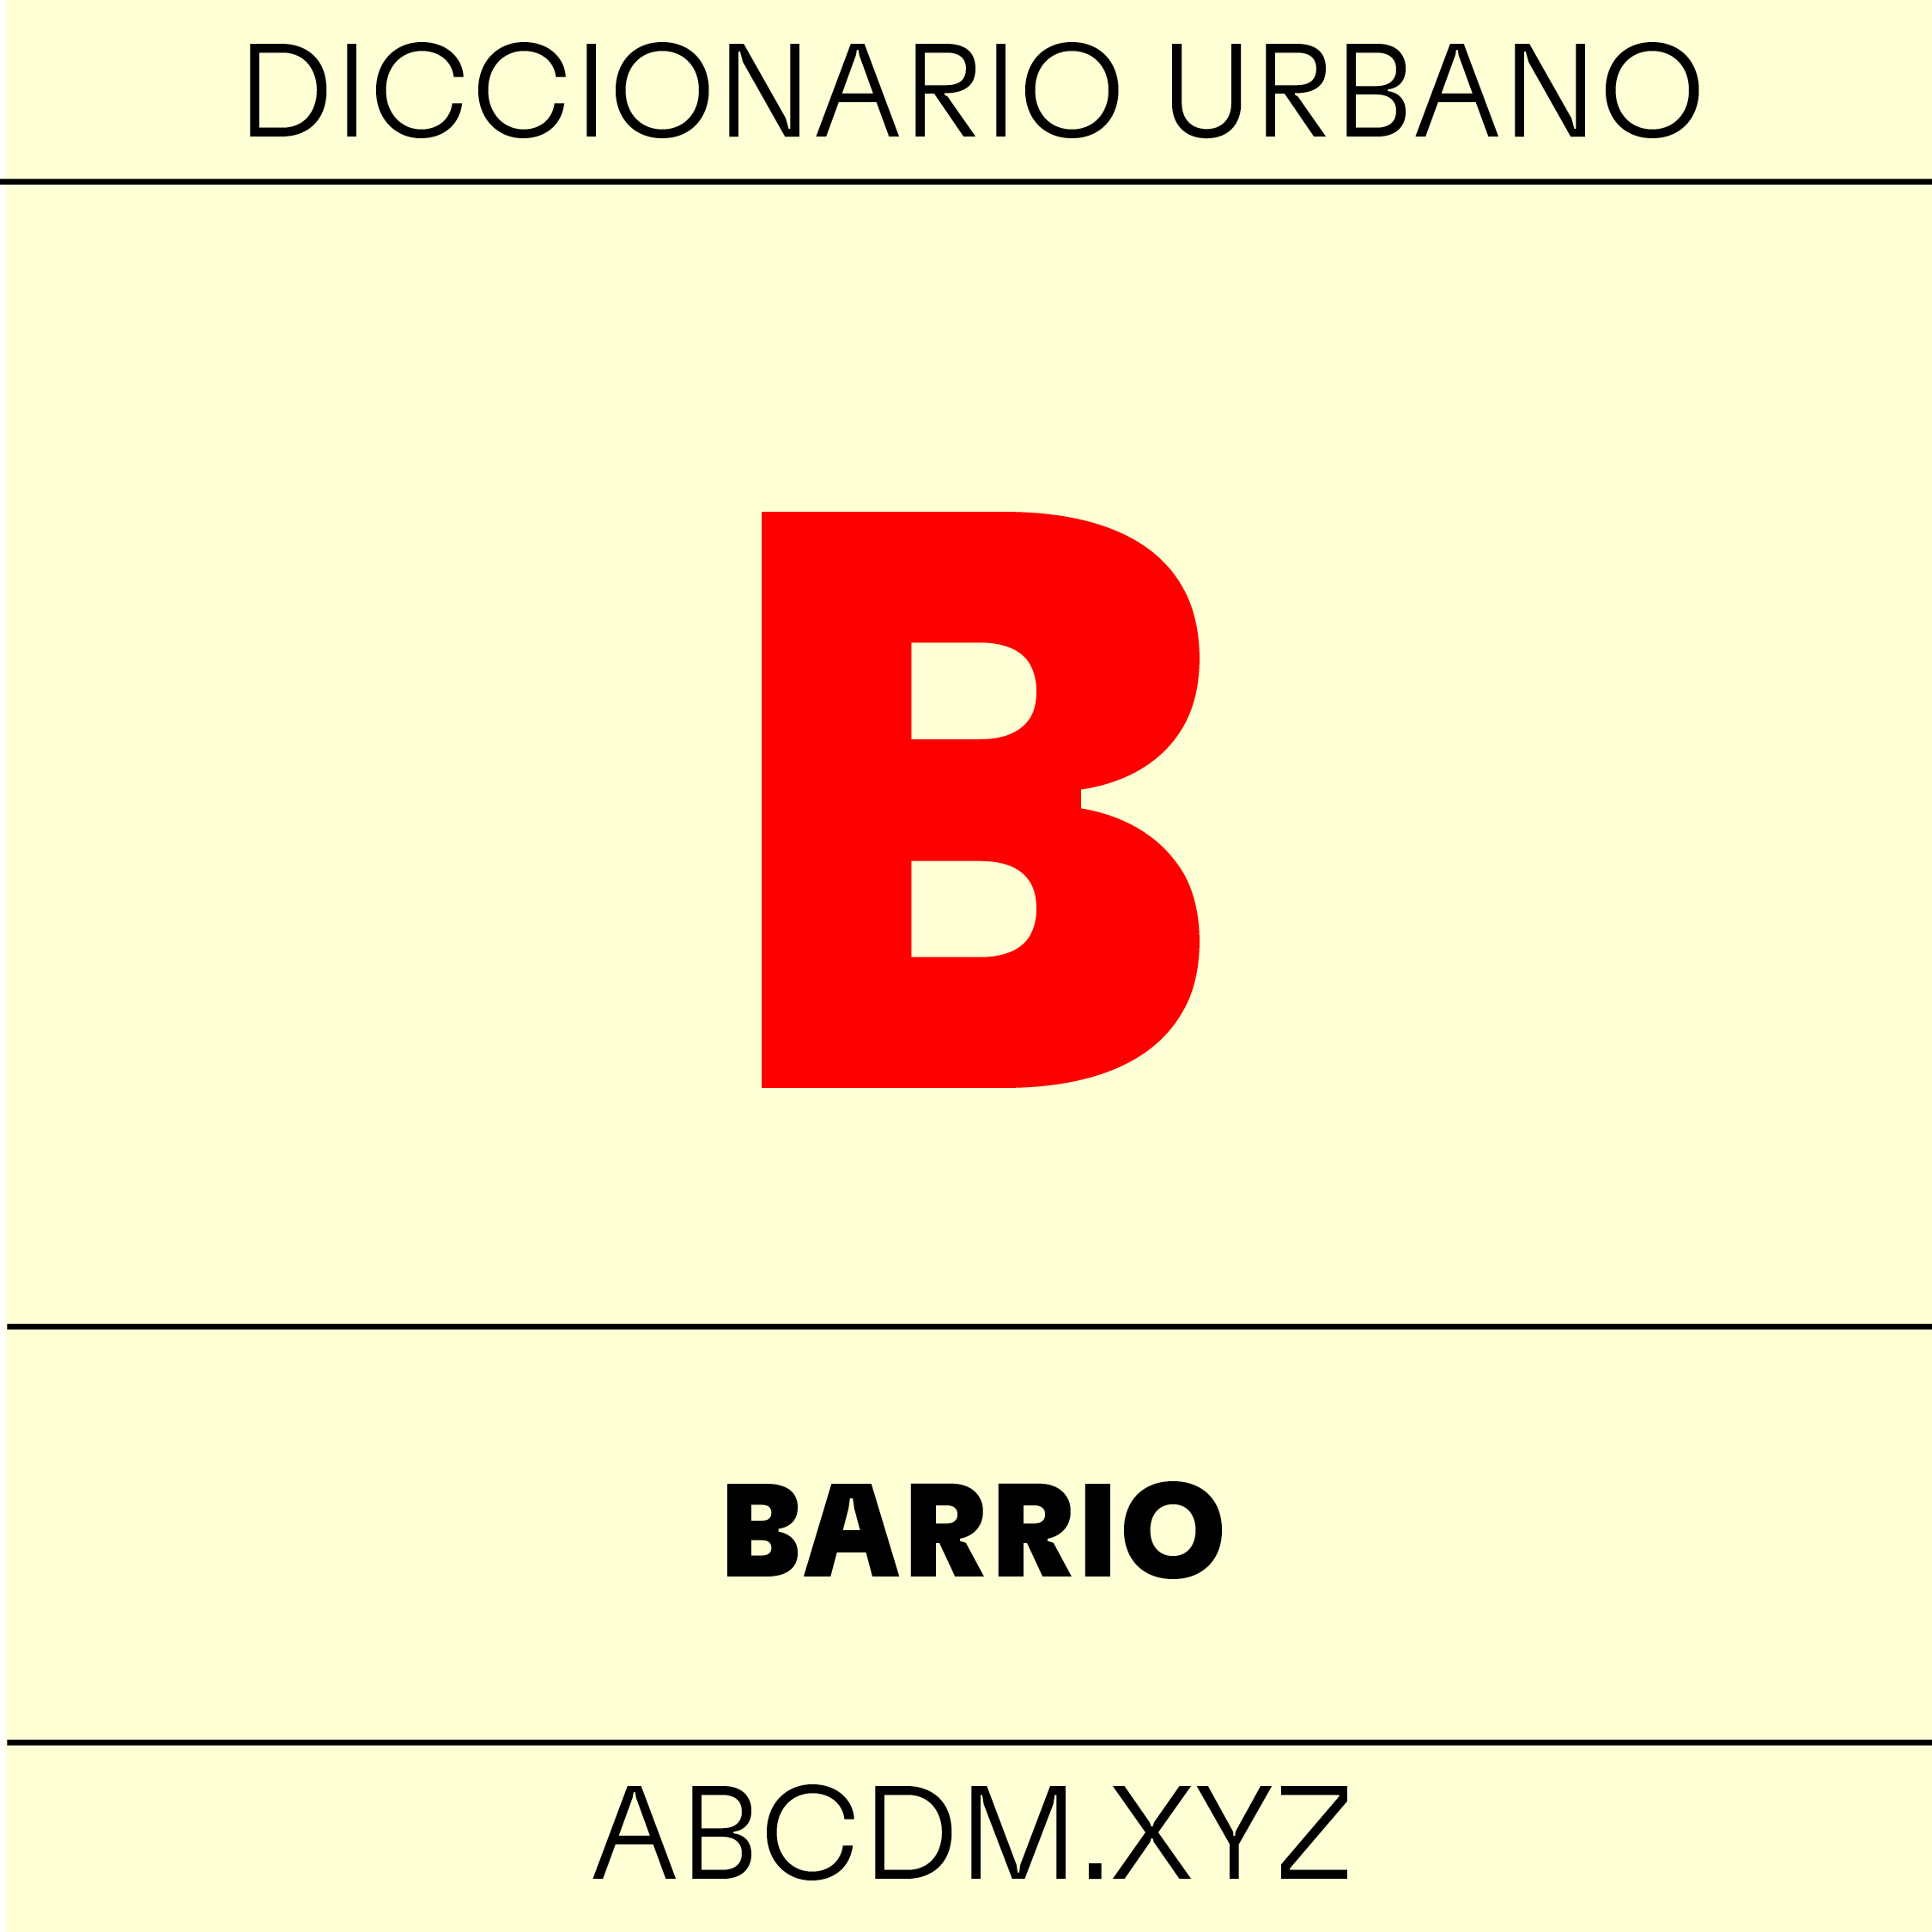 BARRIO